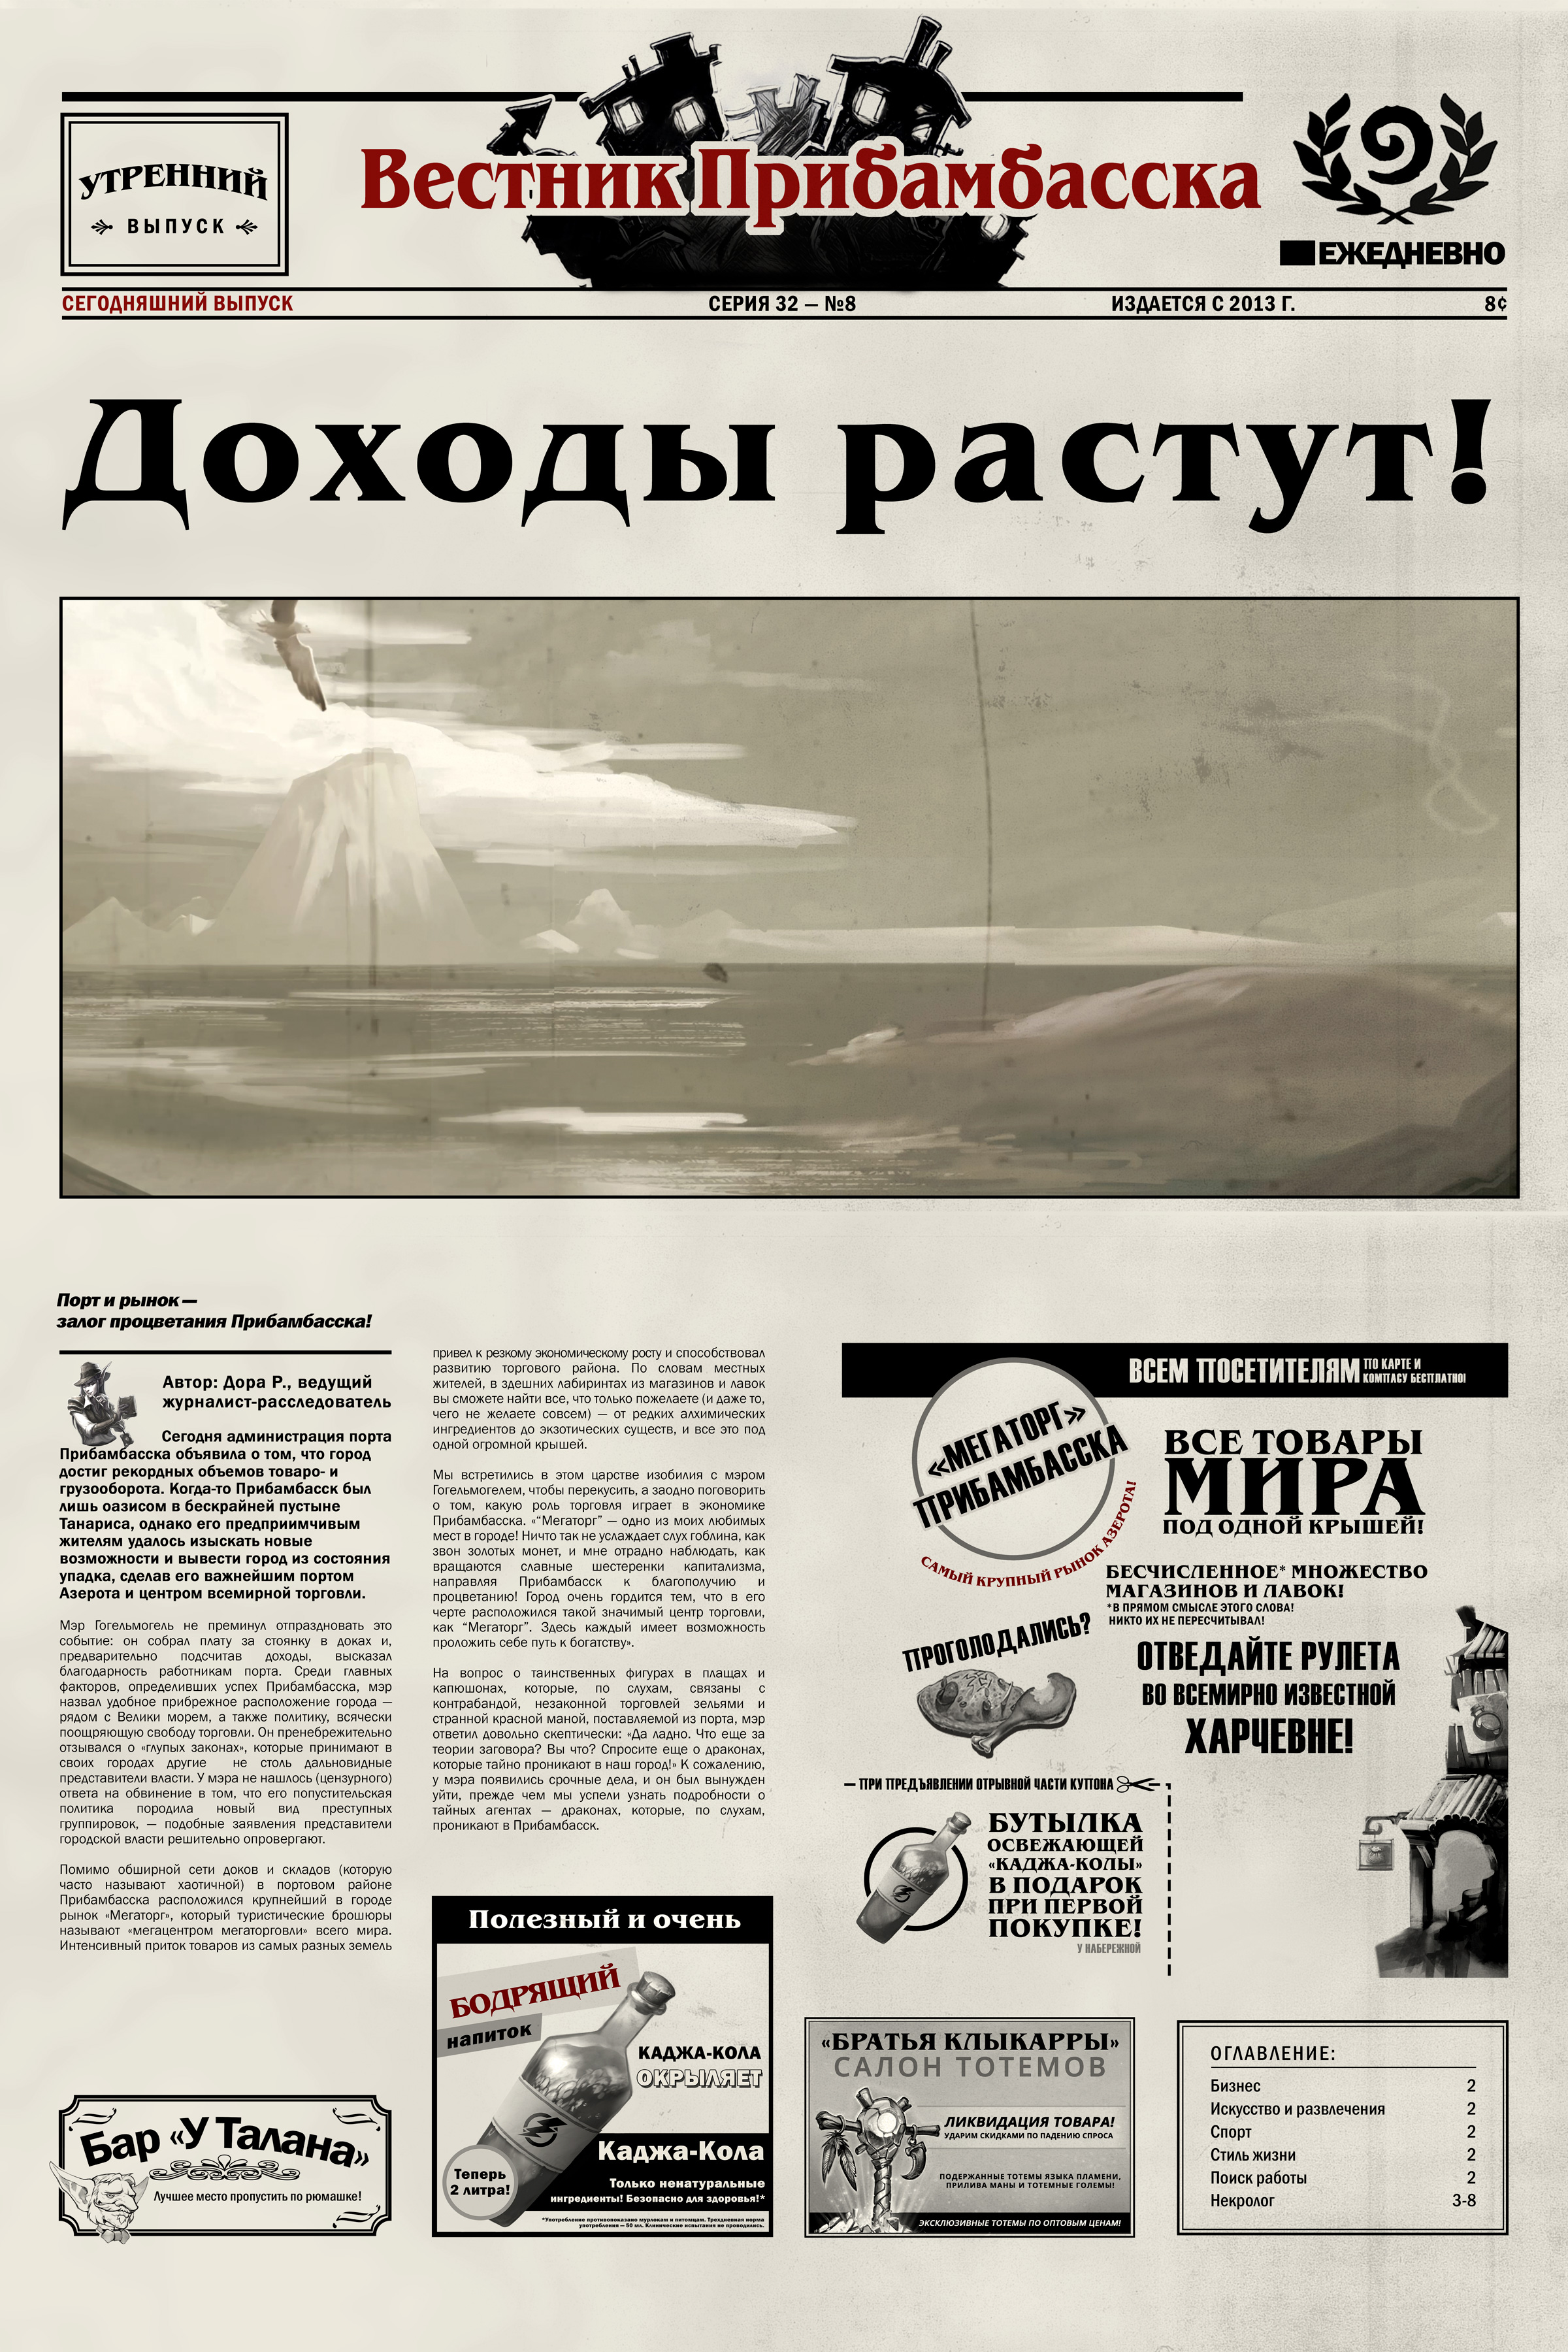 Второй выпуск Вестника Прибамбасска